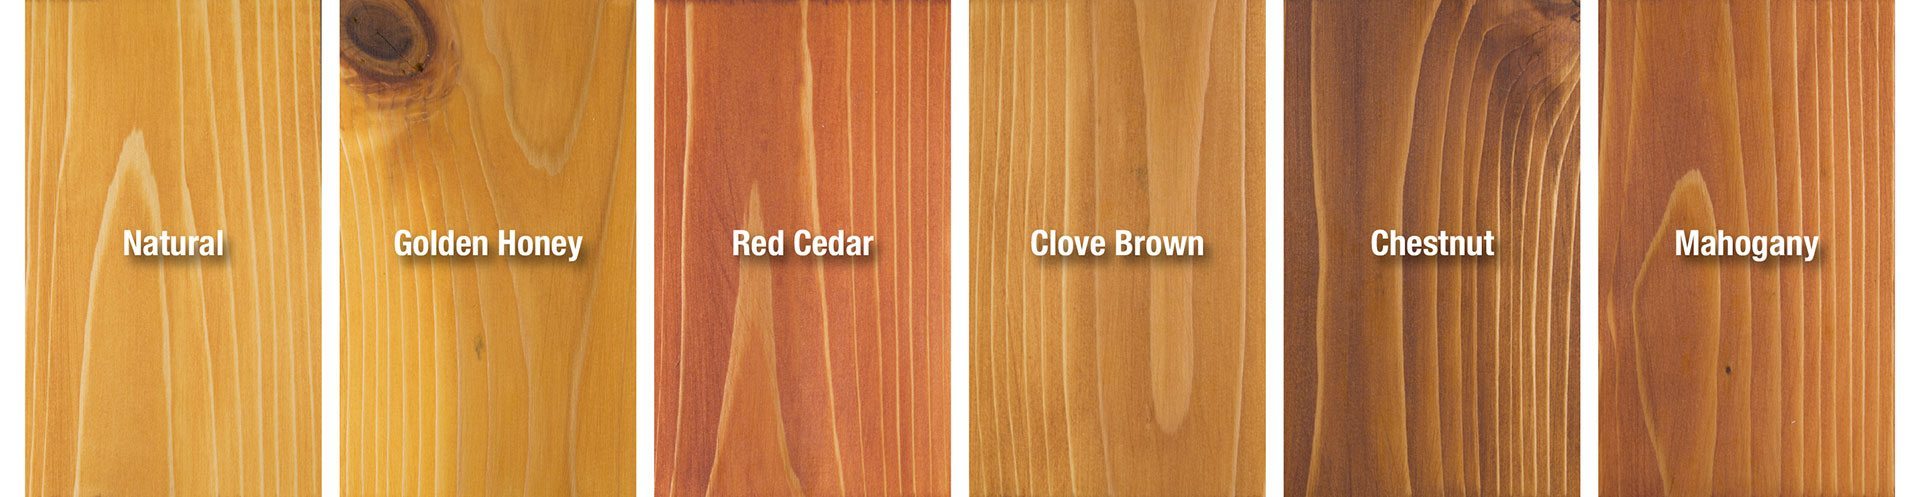 Smooth-Cedar-Boards